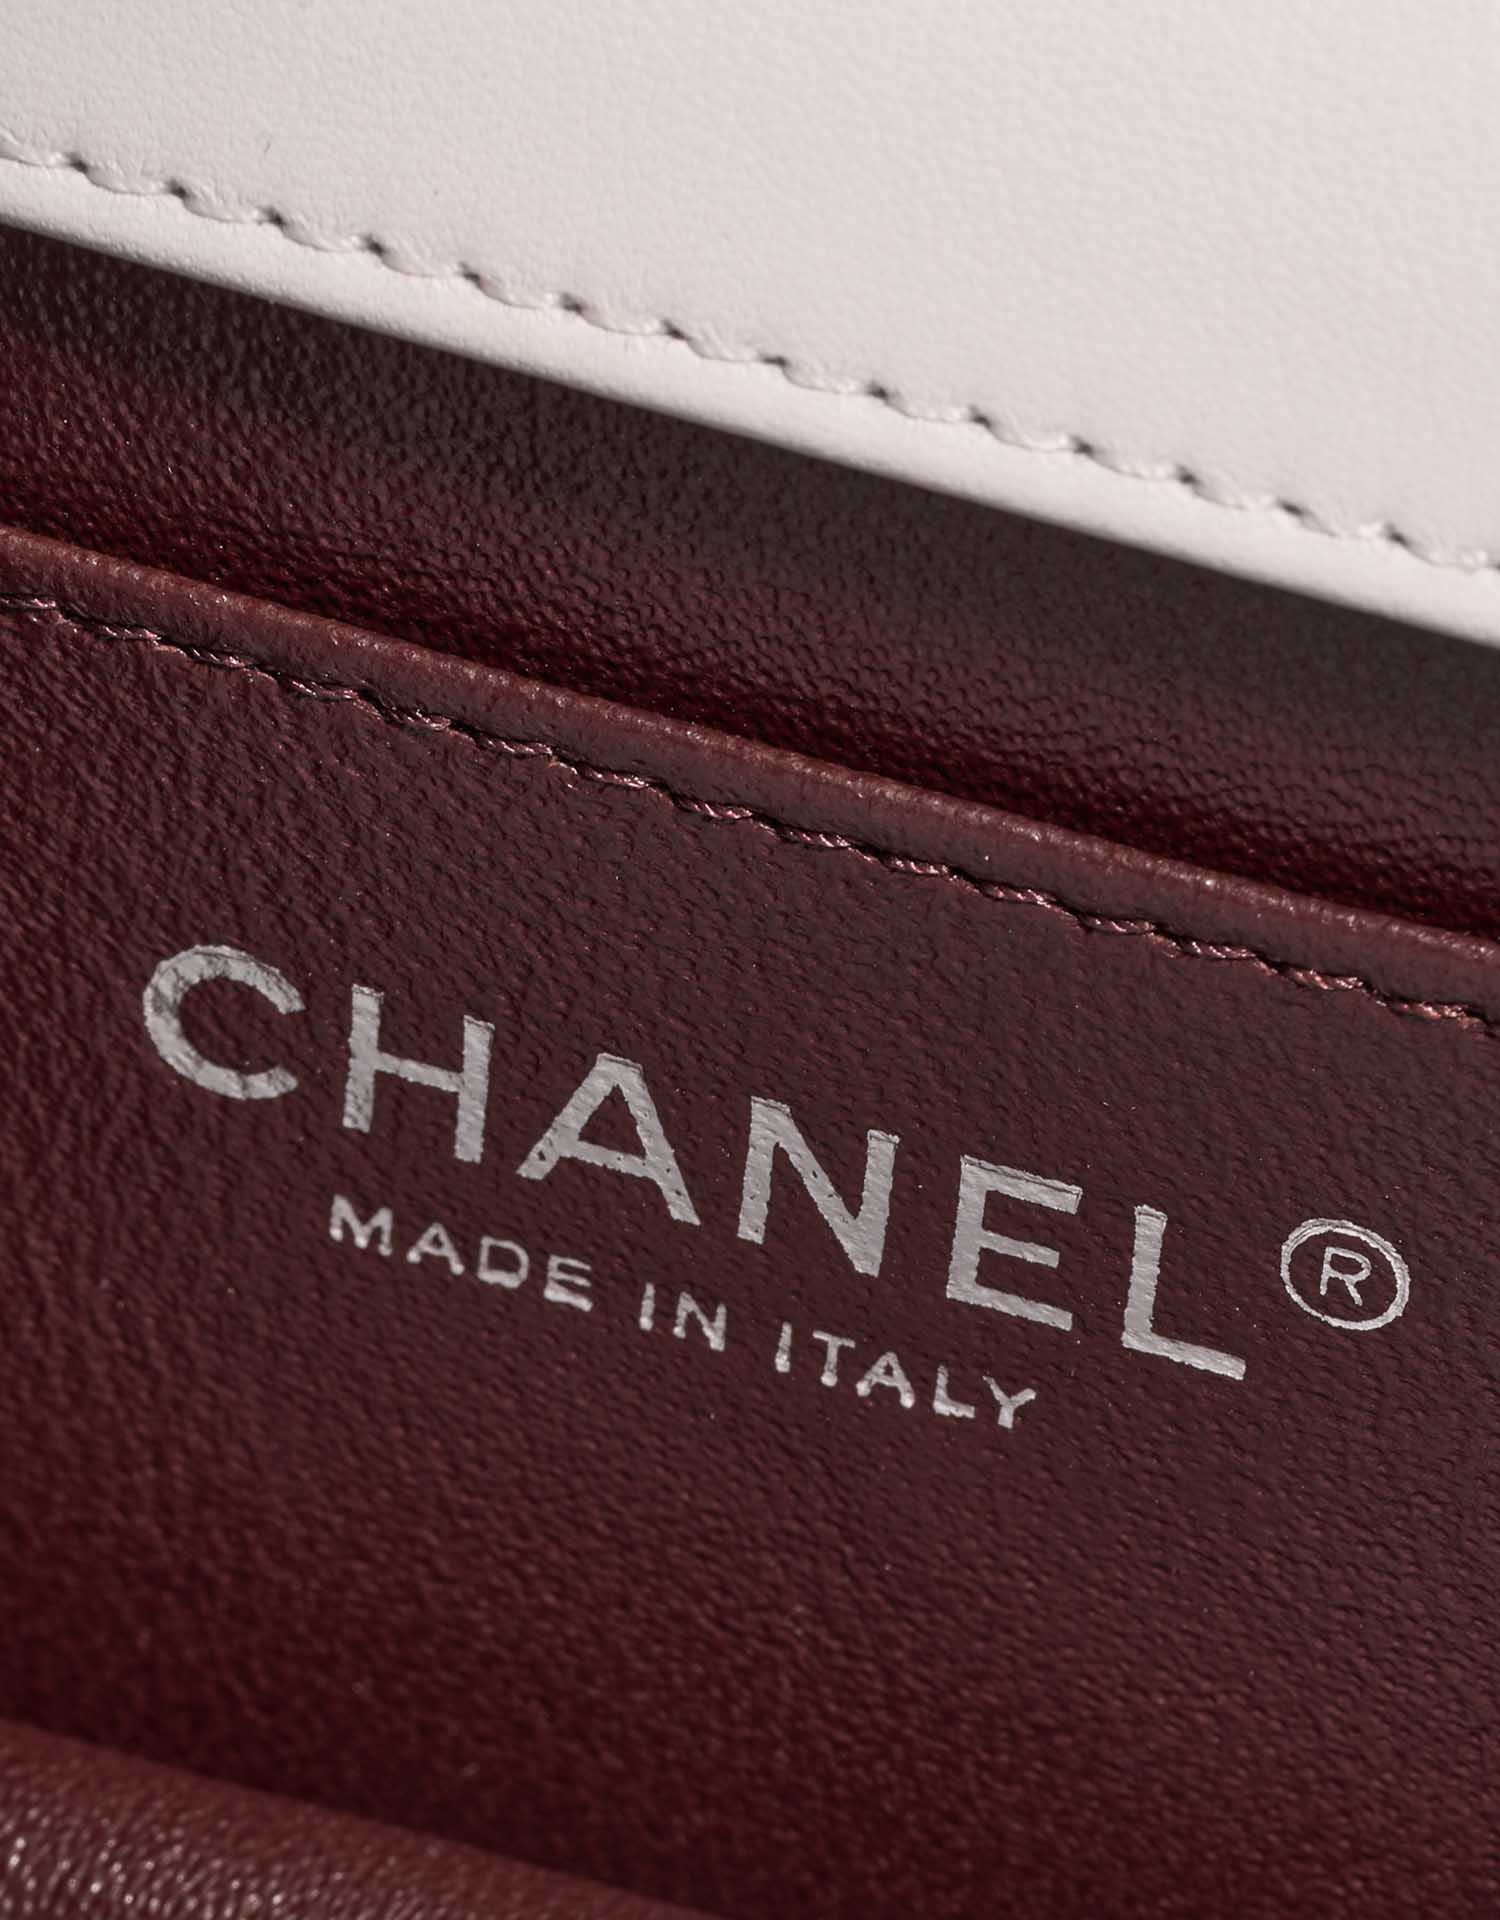 Chanel Timeless MiniFlap White Logo | Verkaufen Sie Ihre Designer-Tasche auf Saclab.com